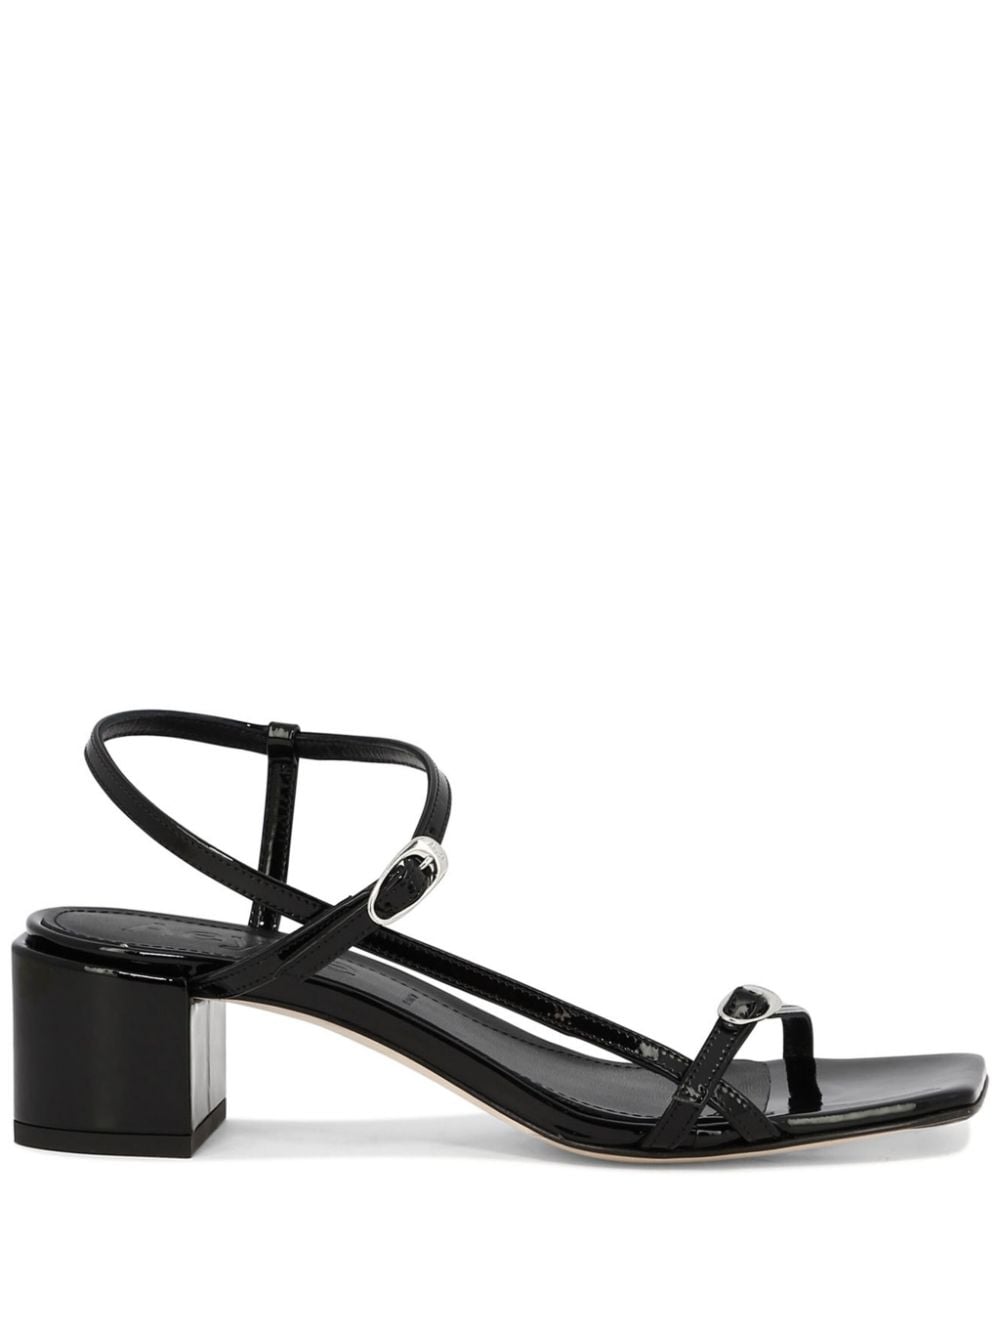 Aeyde Tash 45mm leather slingback sandals - Black von Aeyde